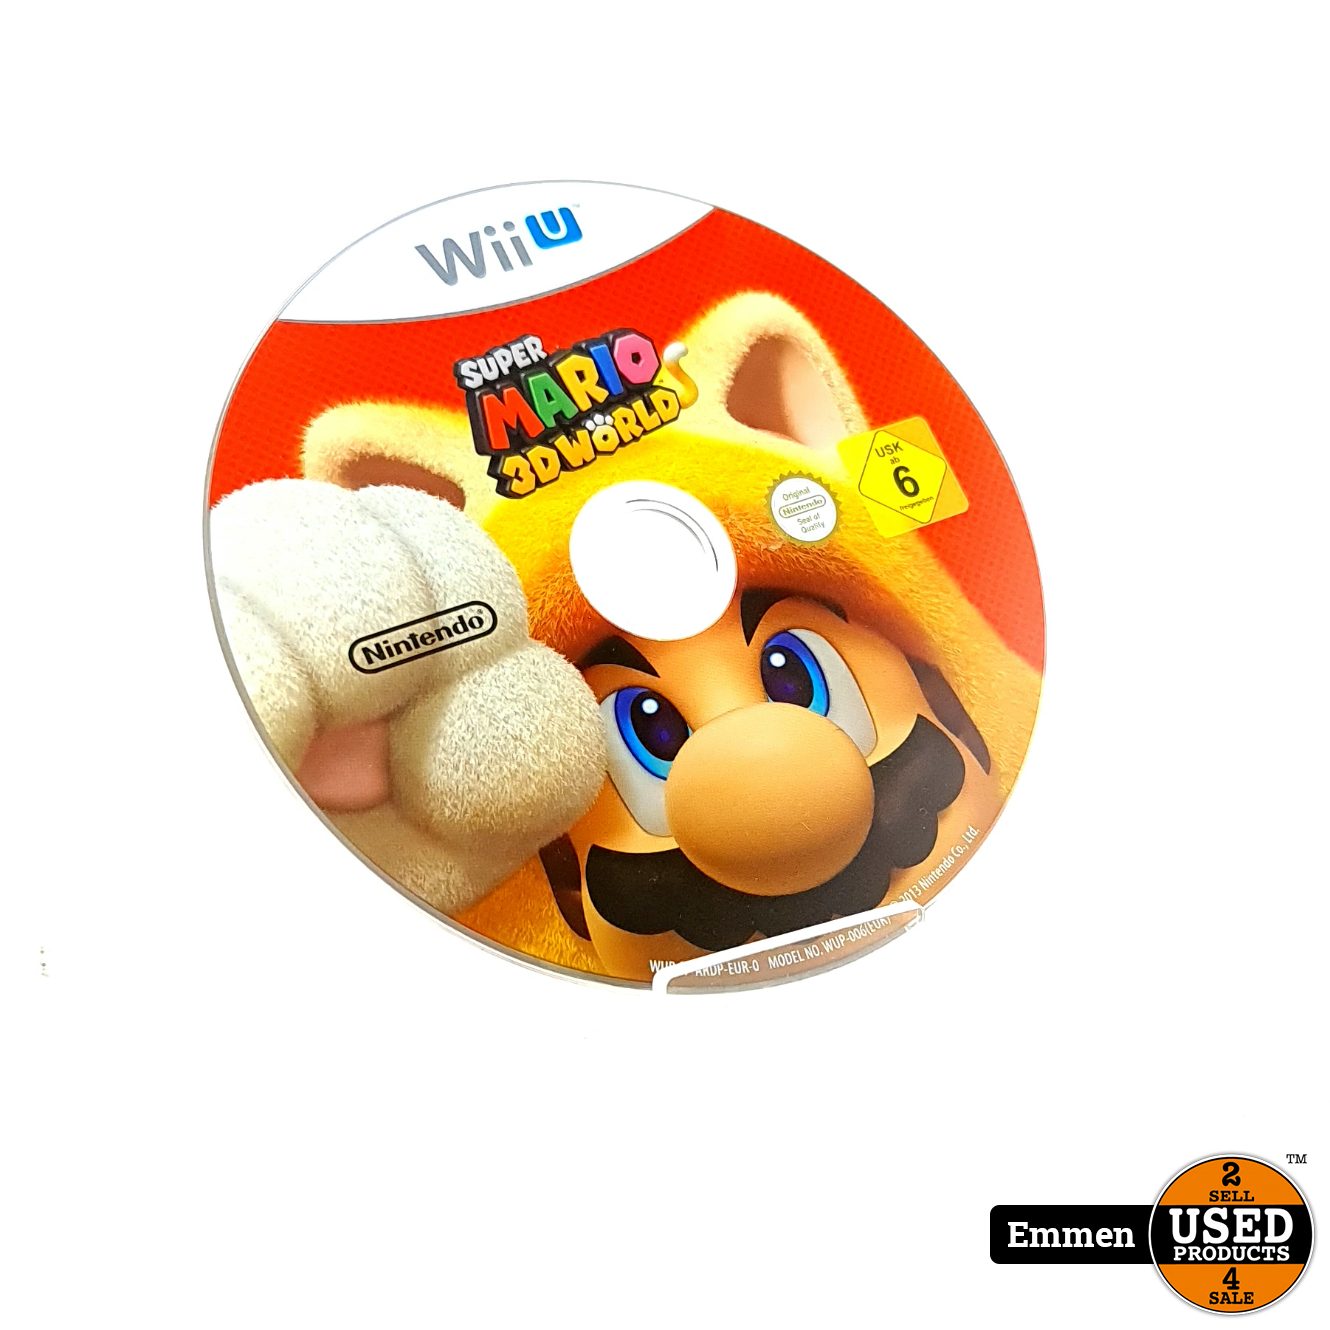 onbekend jukbeen Zij zijn Nintendo Wii U Game: Super Mario 3D World - Used Products Emmen